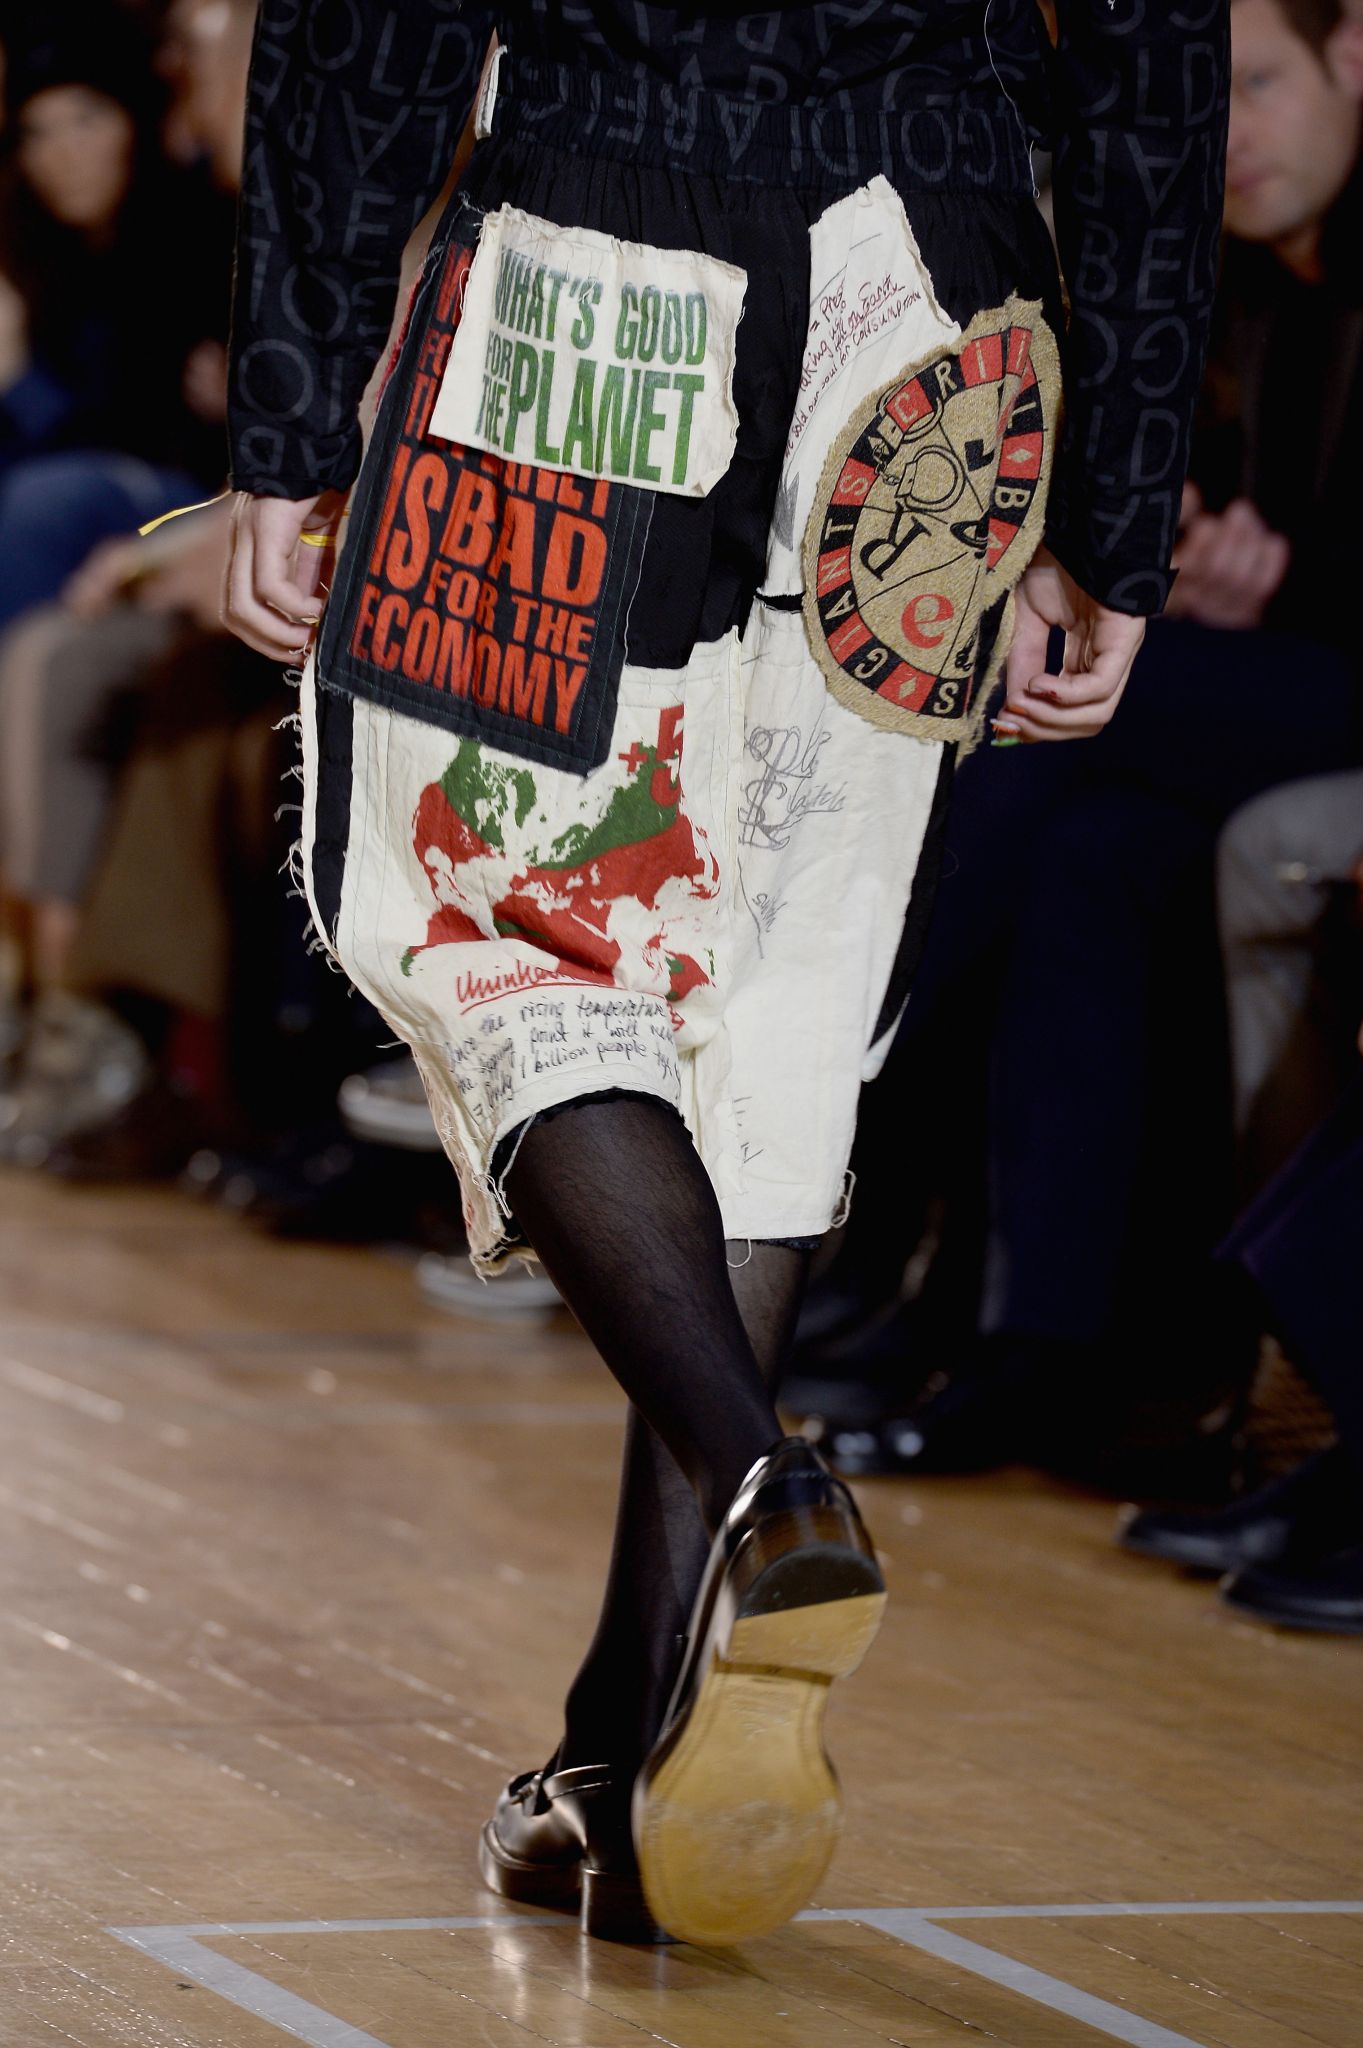 Ugg Boots at London Fashion Week: Ashish & More Collaborations – Footwear  News